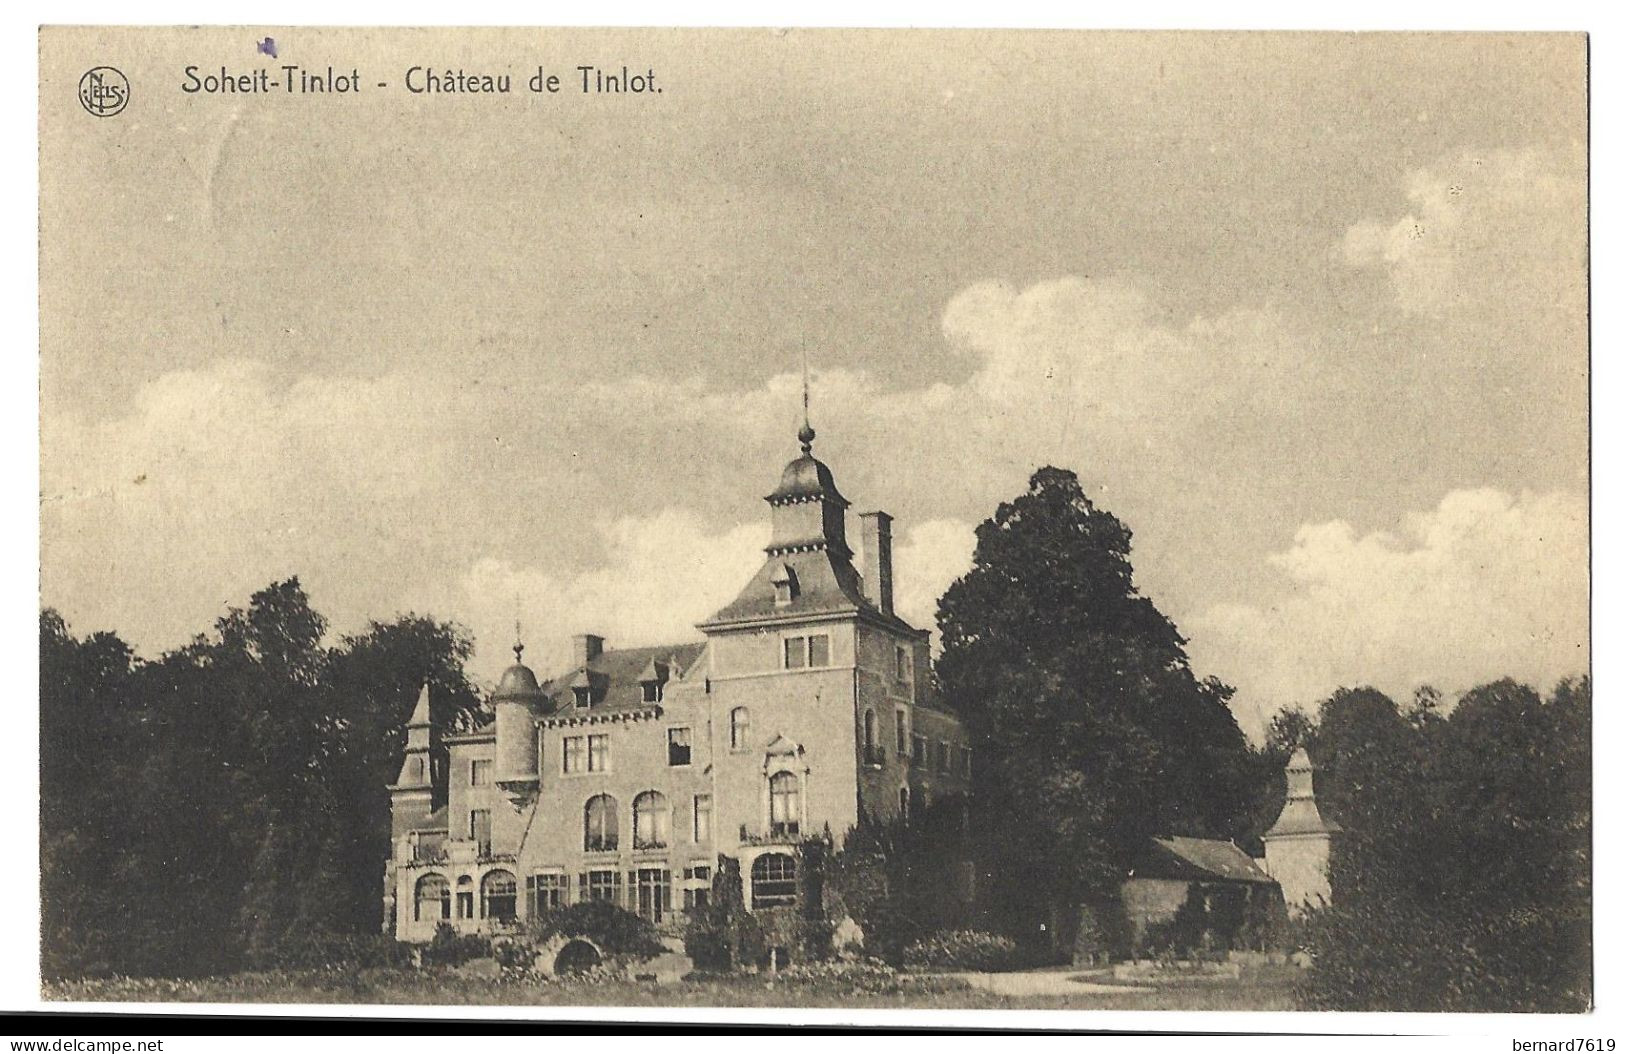 Belgique  -  Soheit  Tinlot  -  Chateau  De Tinlot -  Chevalier  L  De Kaminne De Bex Et Mme Nee De Kaminne De Bex - Thimister-Clermont